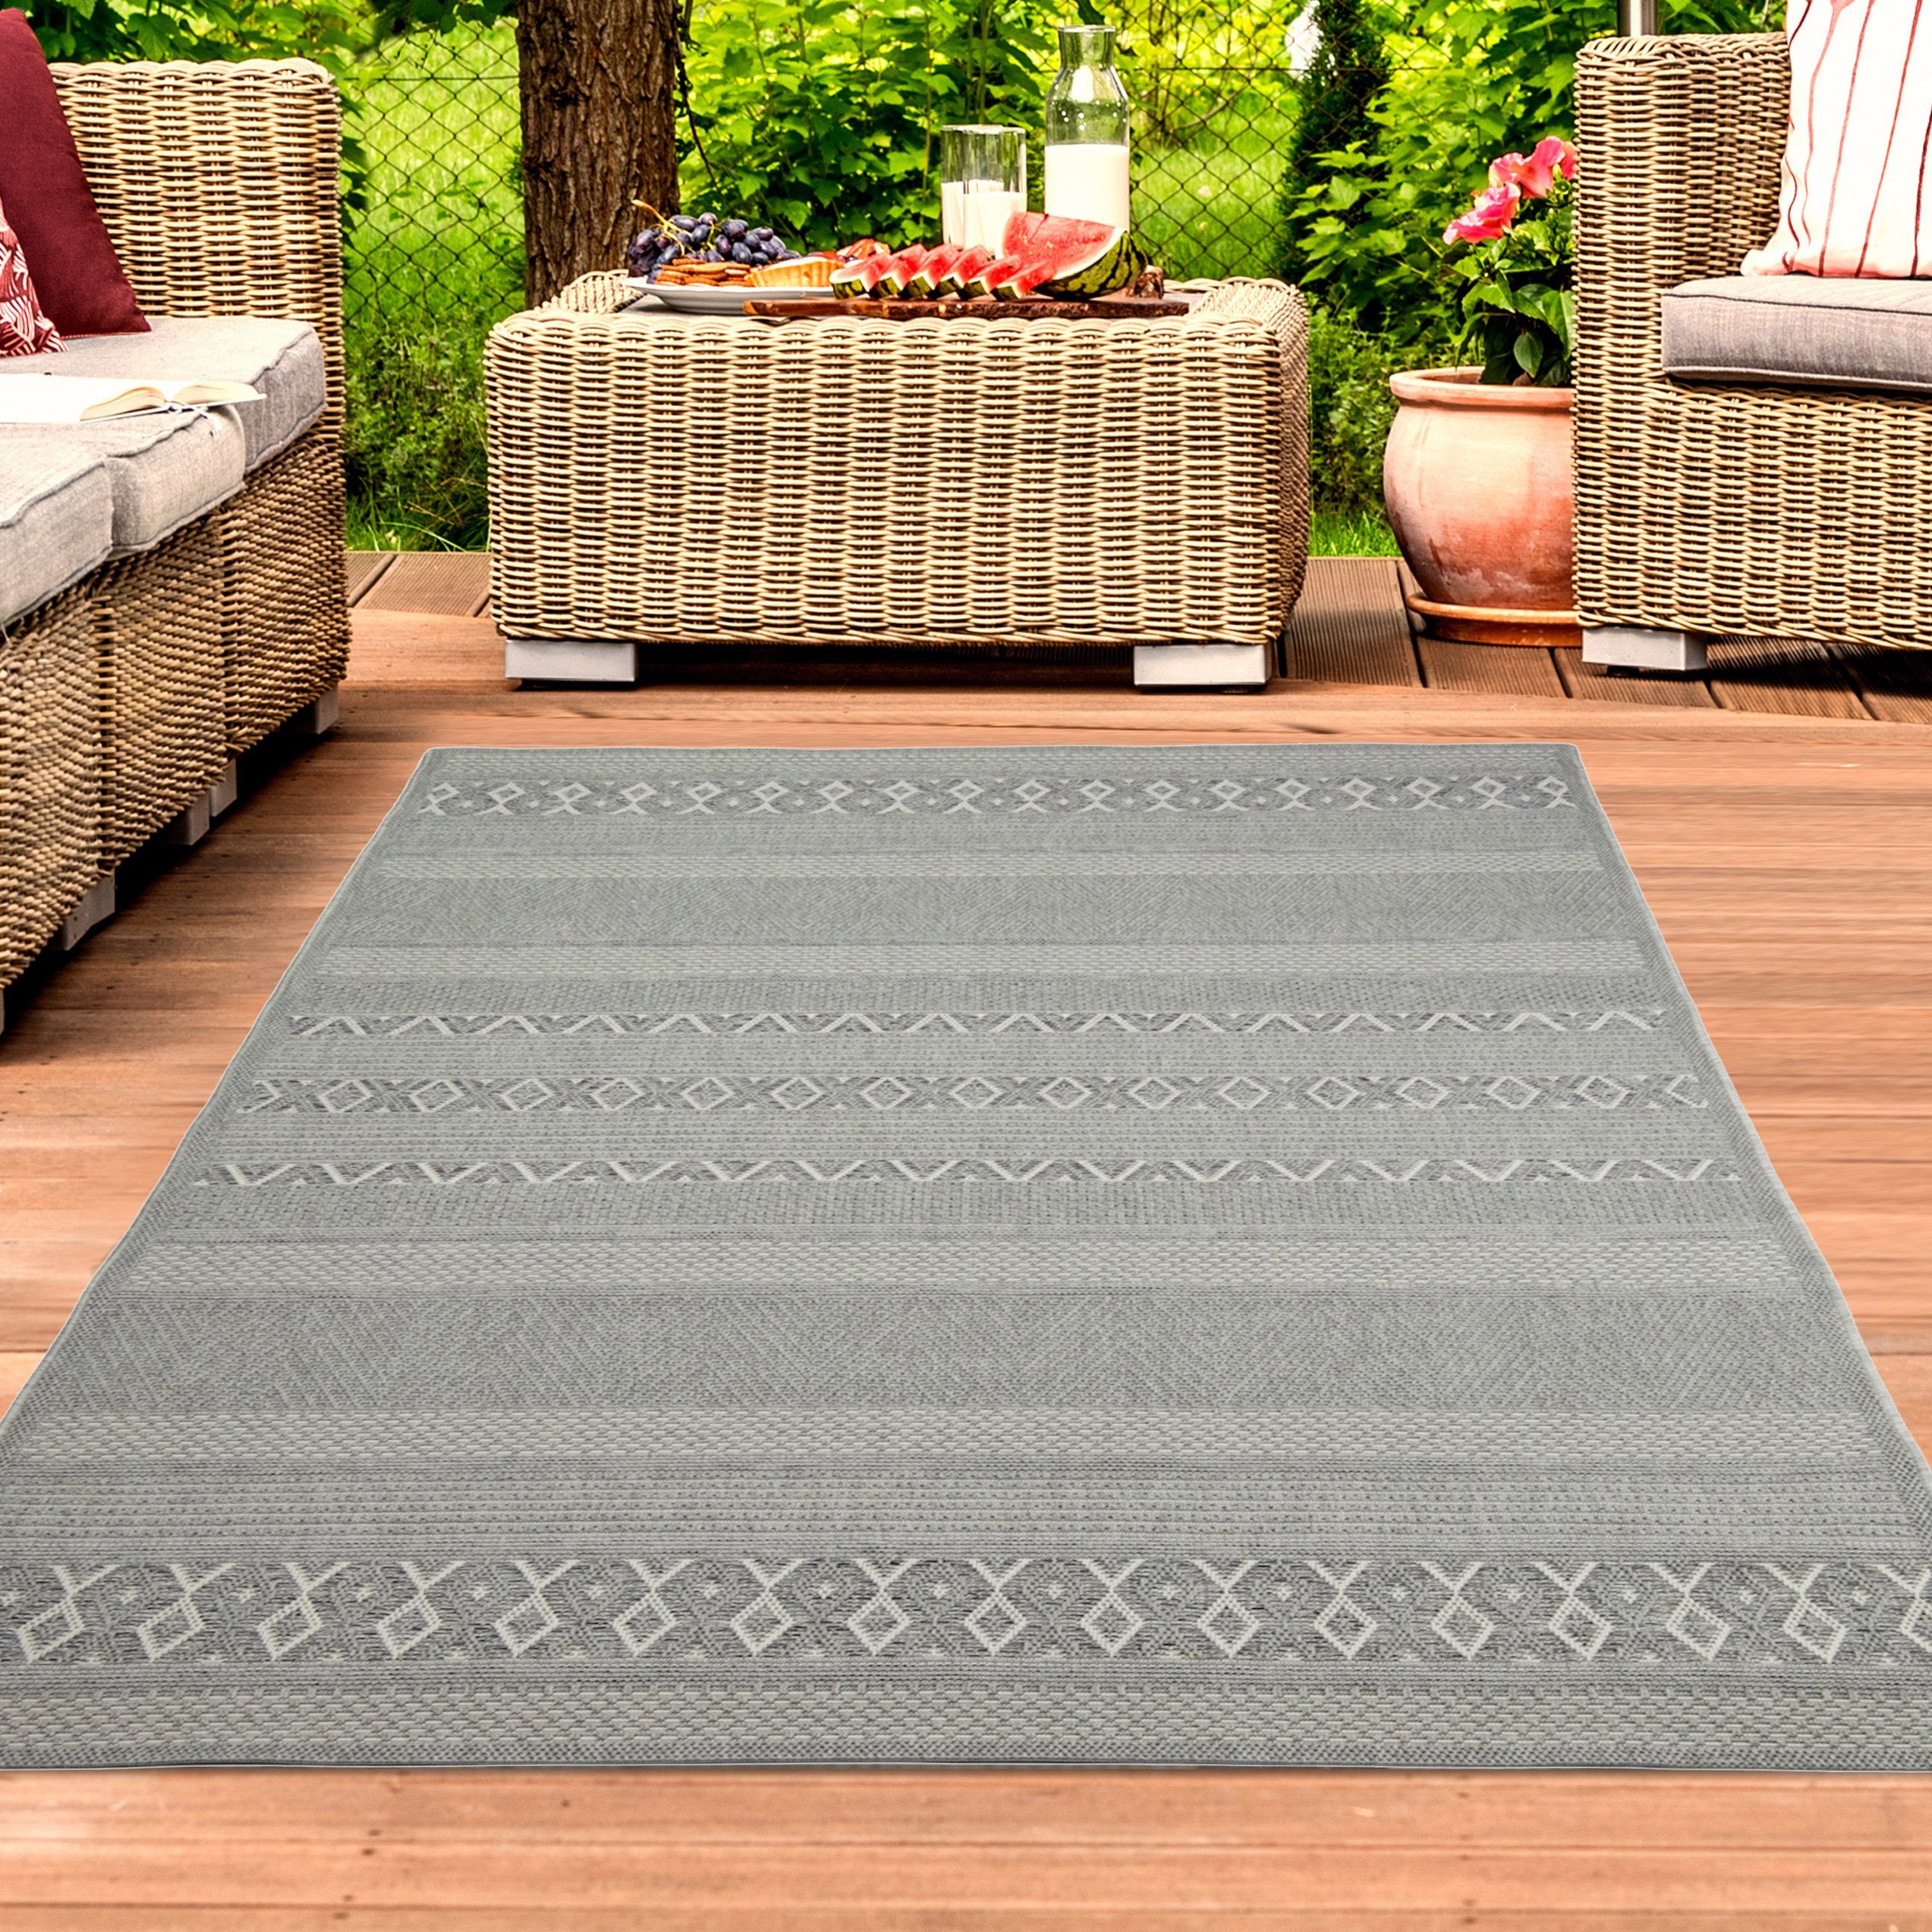 Fachgeschäft für neue Produkte! Outdoorteppich In- & Outdoor in Teppich TeppichHome24, graufarben, Rechteckig